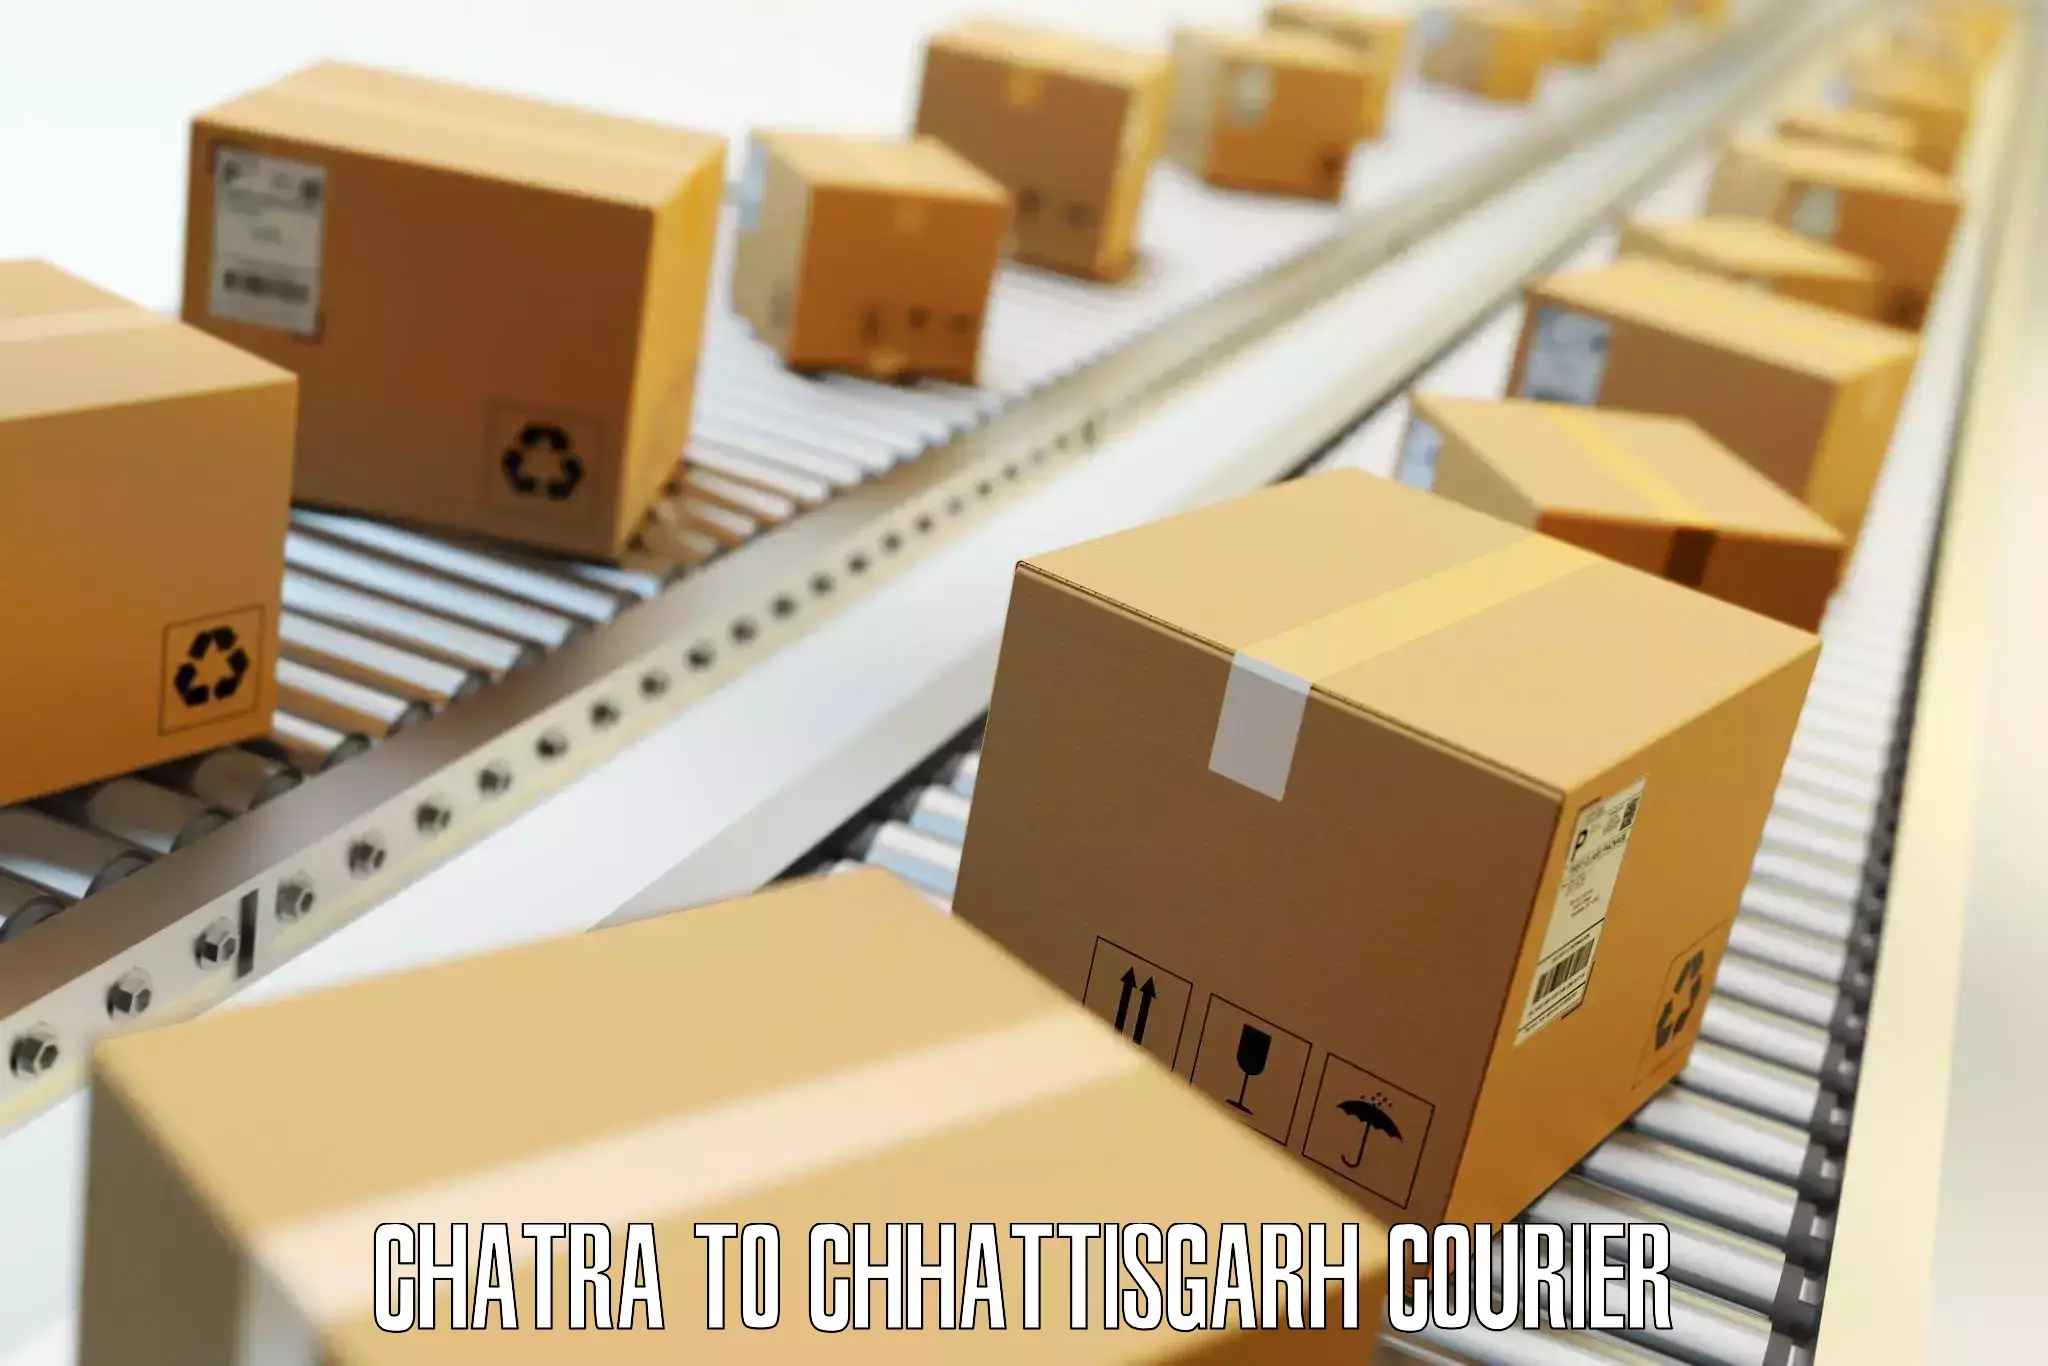 Luggage delivery estimate Chatra to Patna Chhattisgarh